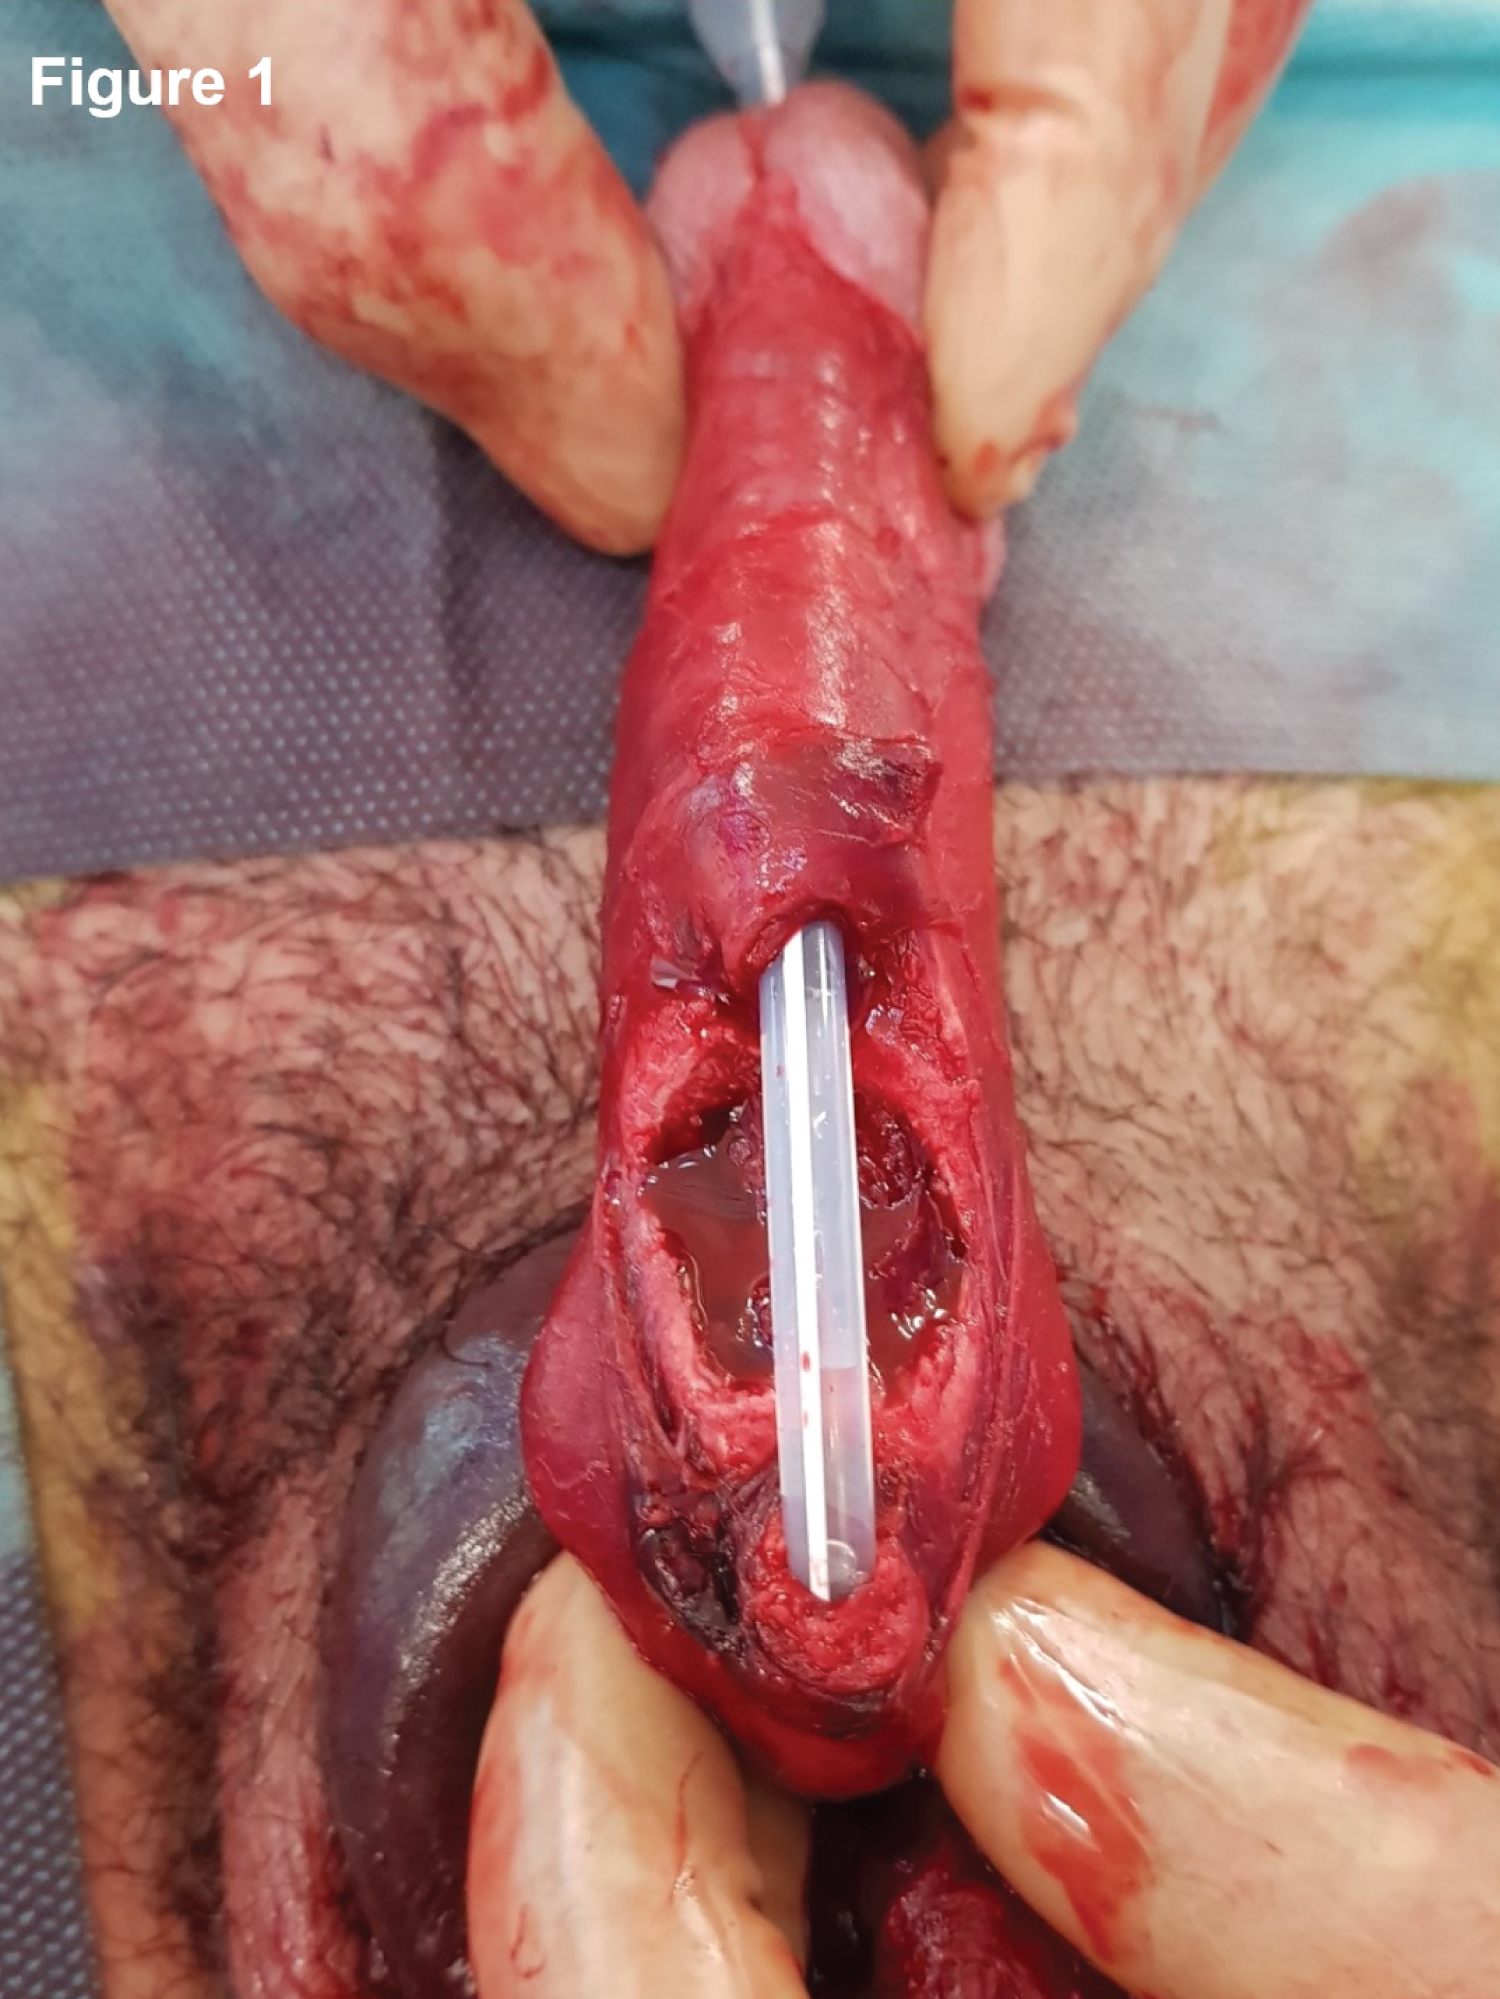 penile fracture symptoms photos